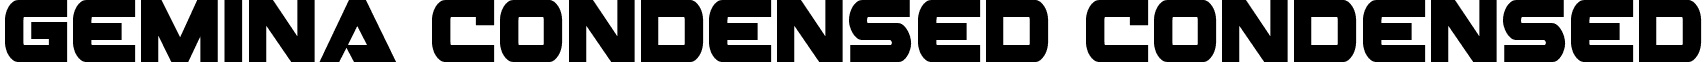 Gemina Condensed Condensed font - geminacond.ttf